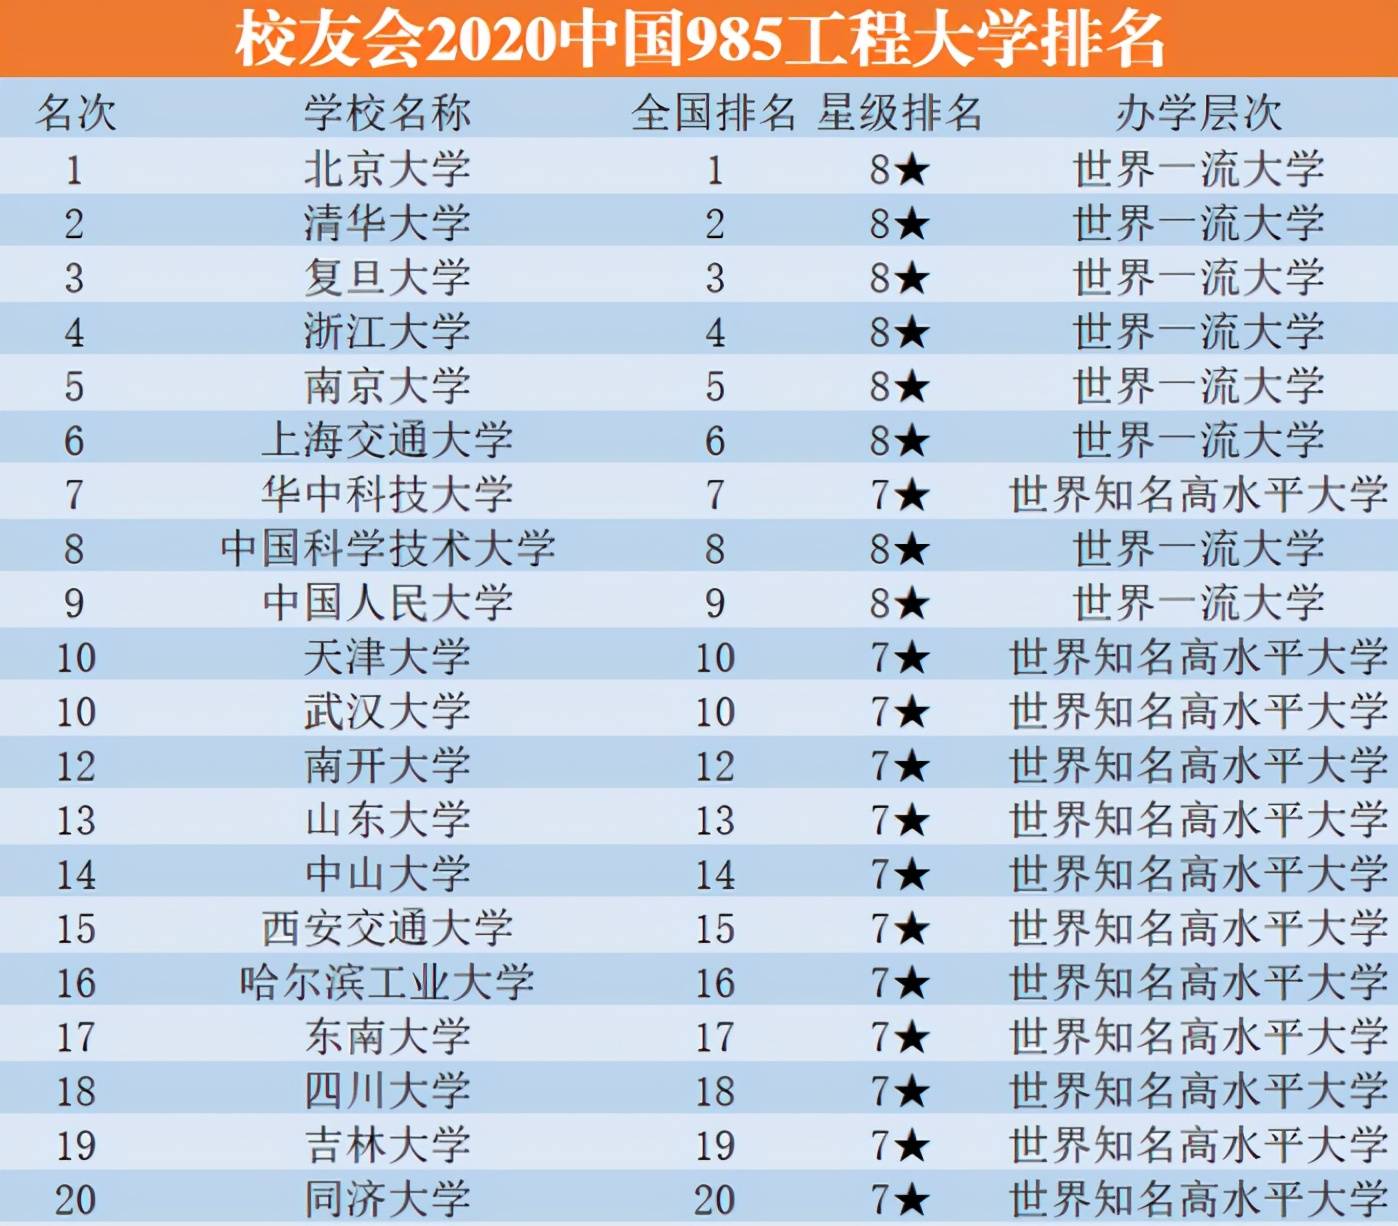 而在今年的985大学排名中,天津大学和武汉大学竟然并列第10的位置,这